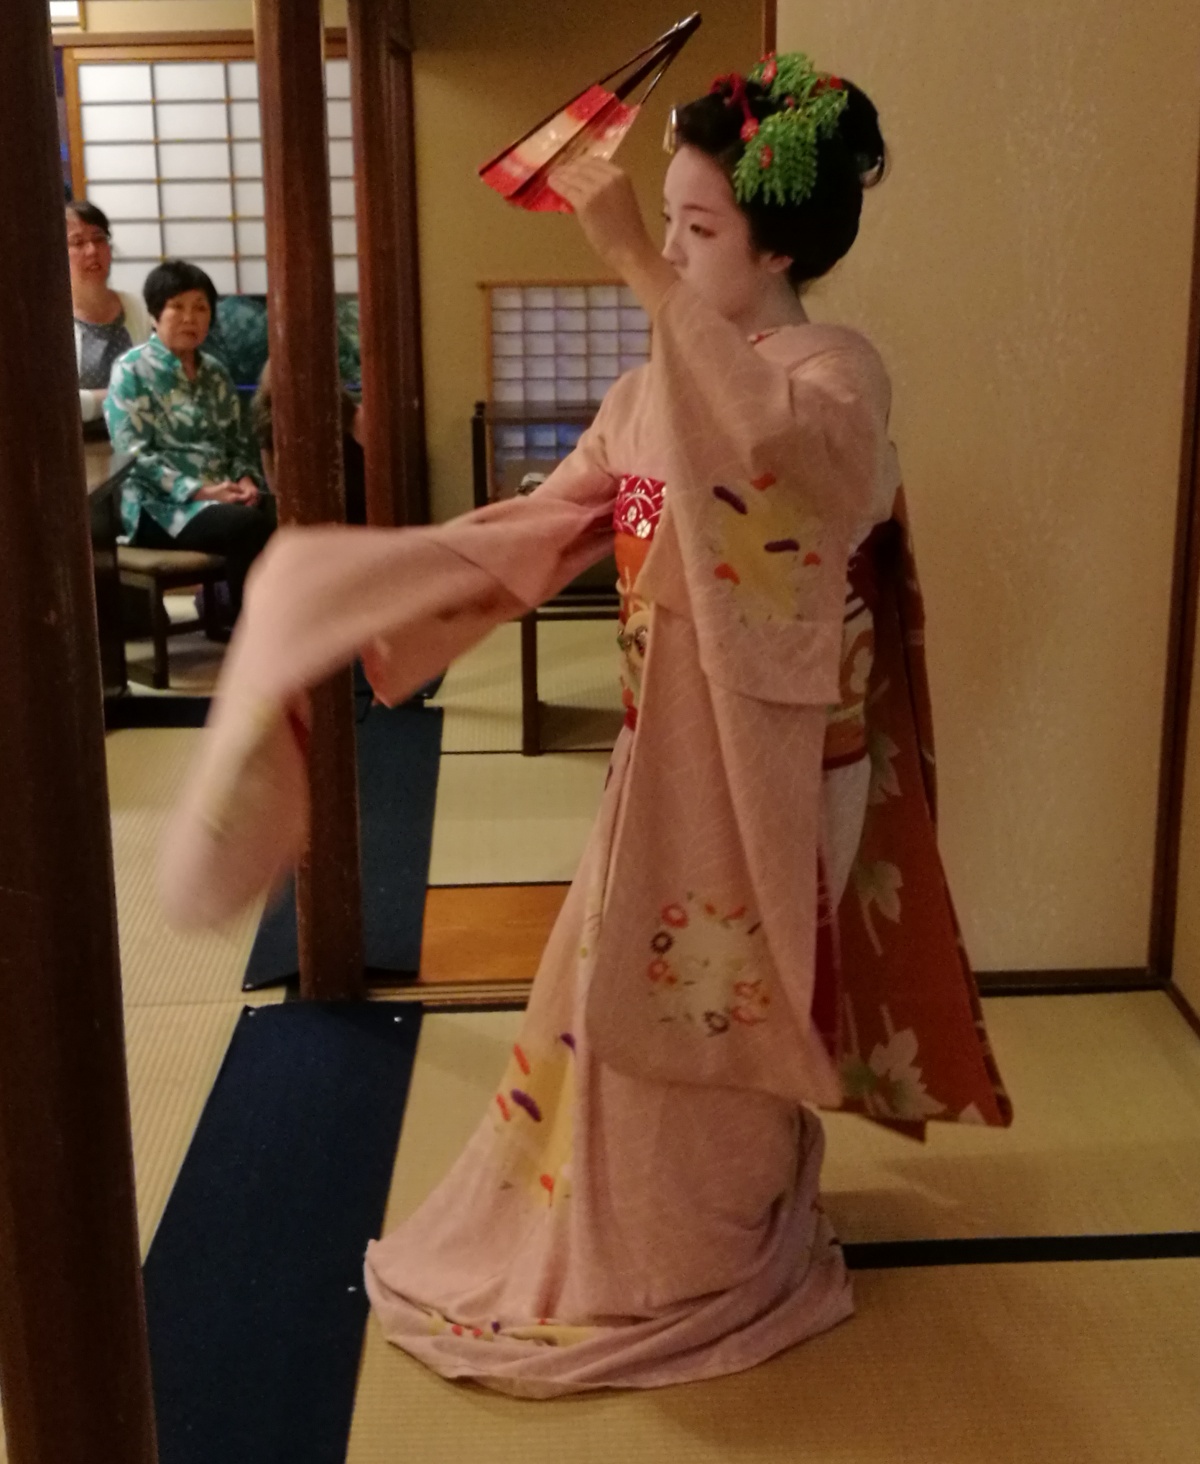 2. Watch a Geisha Dance